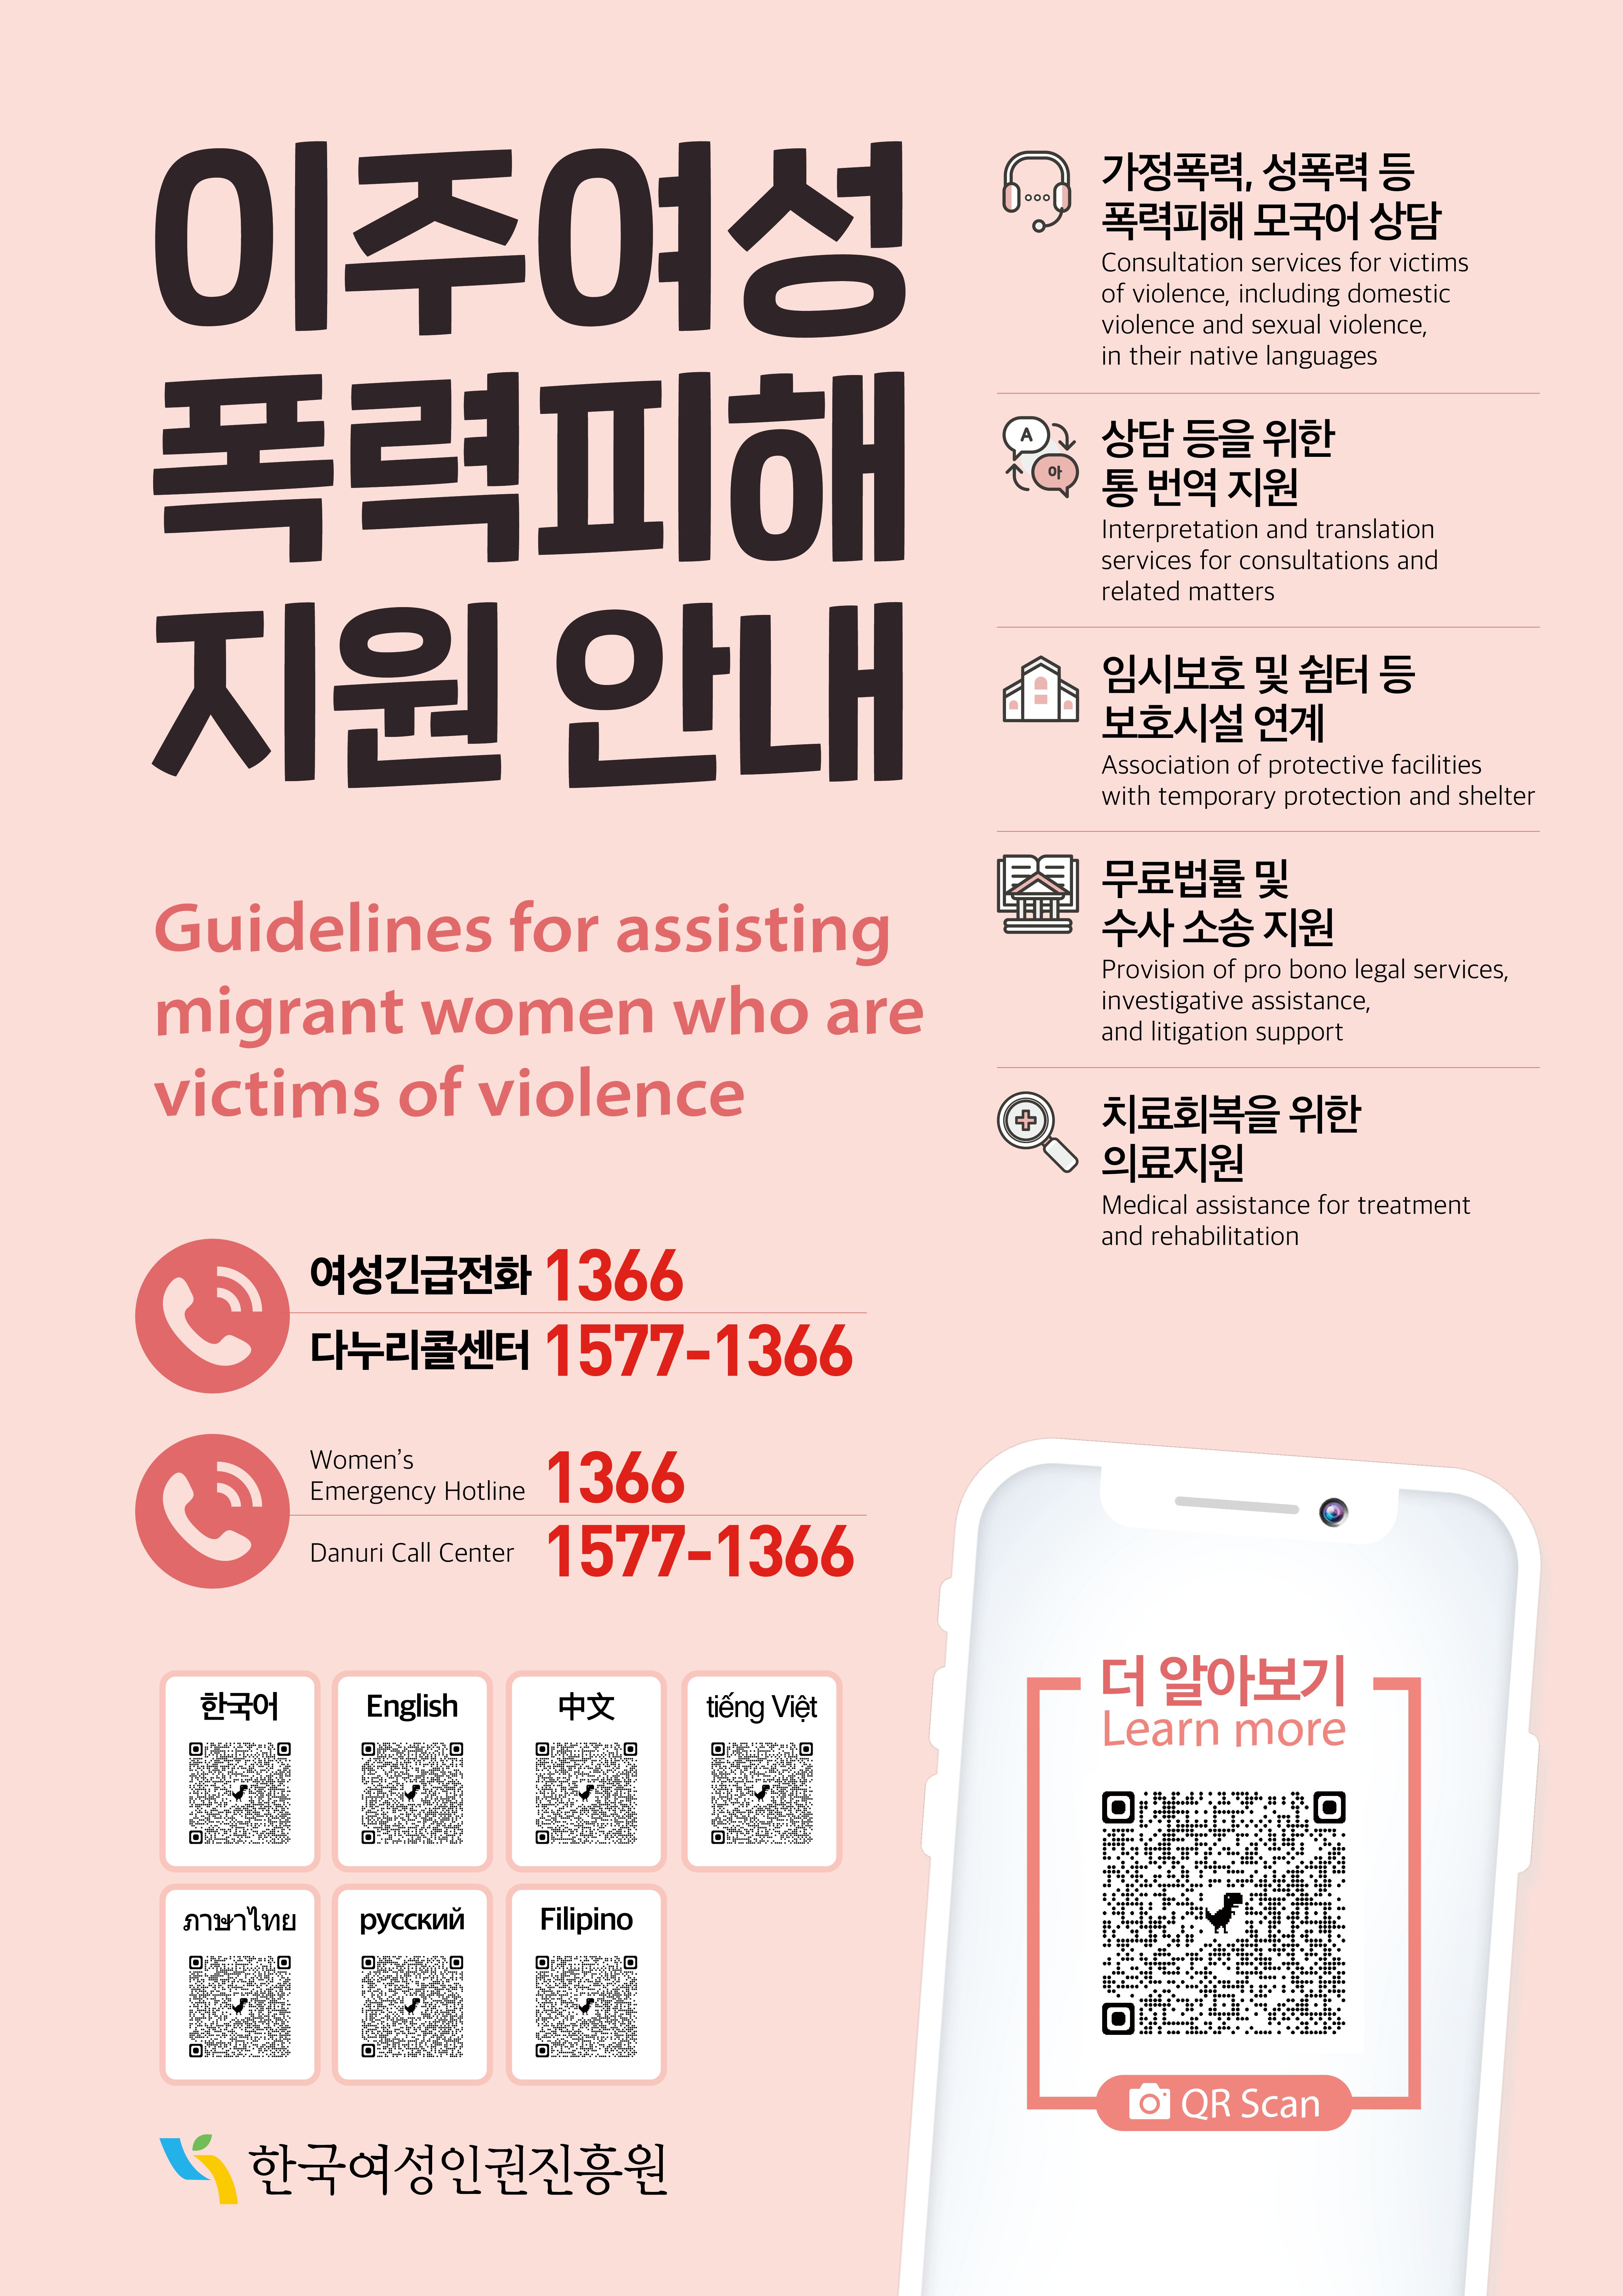 이주여성 폭력피해 지원 안내(Guidelines for assisting migrant women who are victims of violence). 1.가정폭력,성폭력 등 폭력피해 모국어 상담, 2.상담 등을 위한 통 번역 지원, 3.임시보호 및 쉼터 등 보호시설 연계, 4.무료법률 및 수사 소송 지원, 5.치료회복을 위한 의료지원. 여성긴급전화(Women's Emergency Hotline):1366, 다누리콜센터(Danuri Call Center):1577-1366